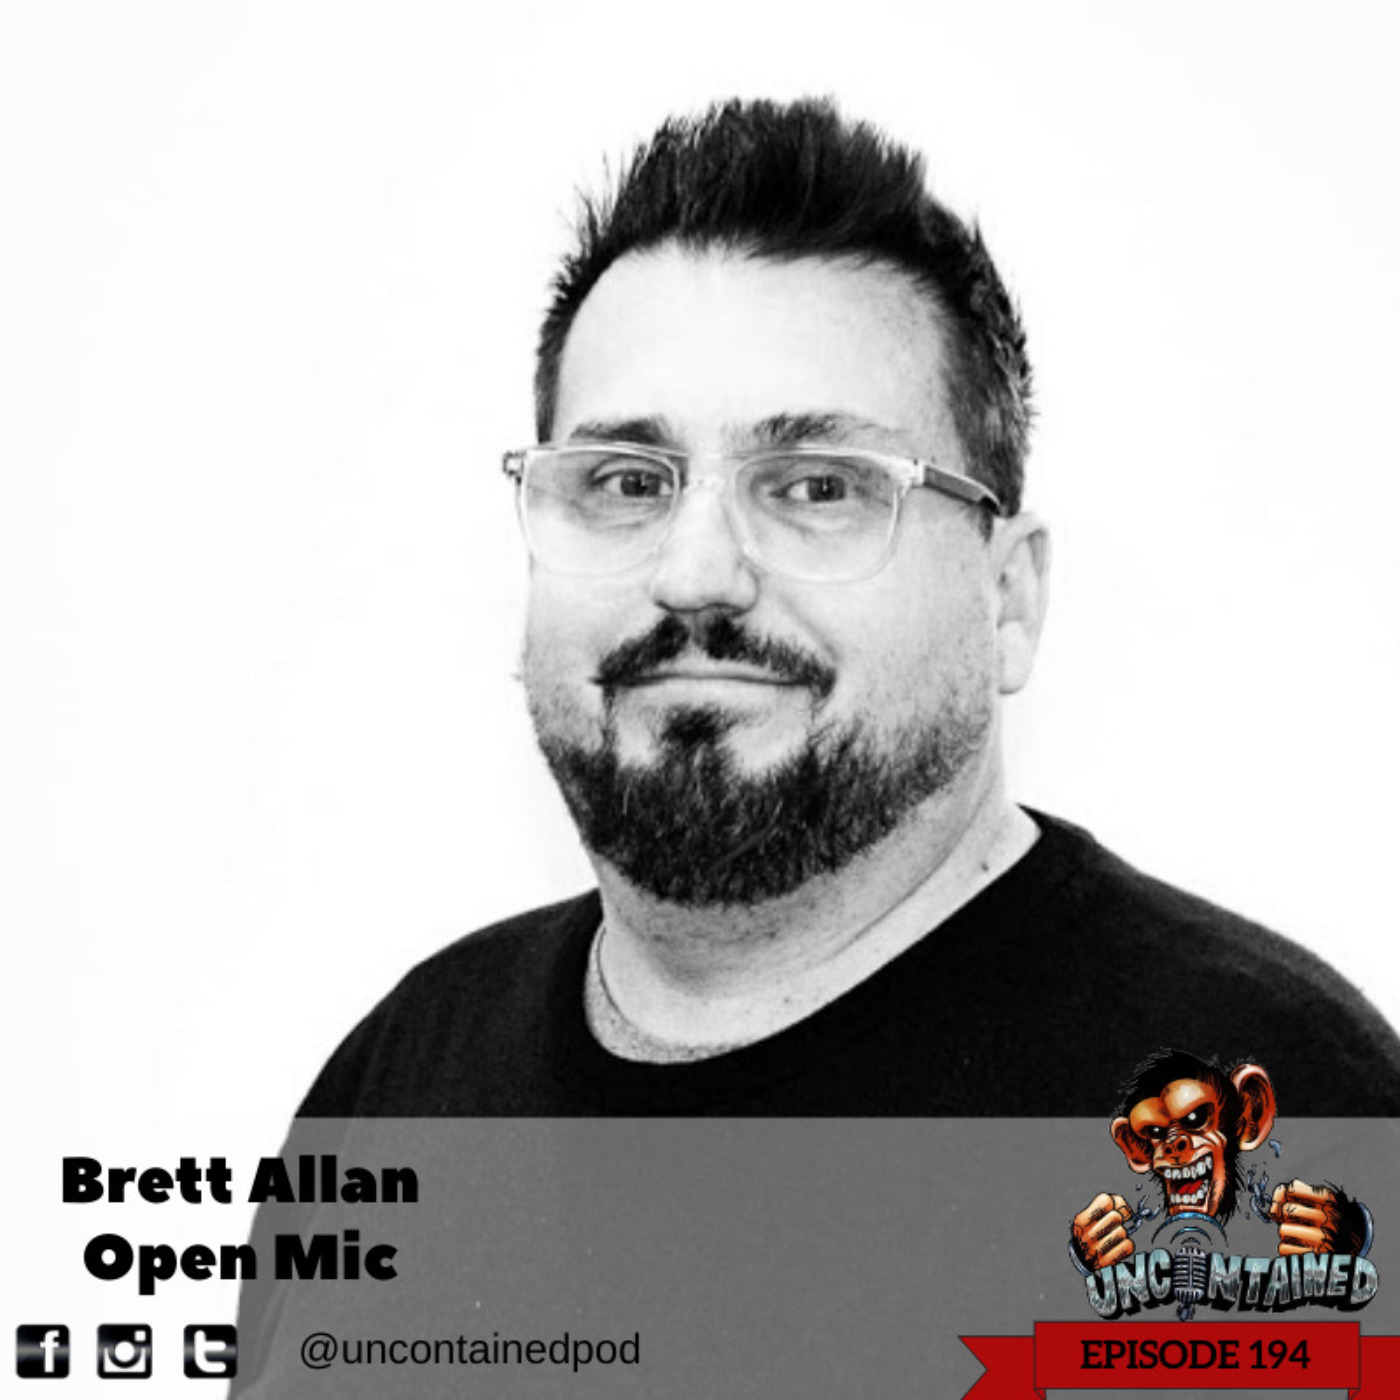 Episode 194: Brett Allan - Open Mic